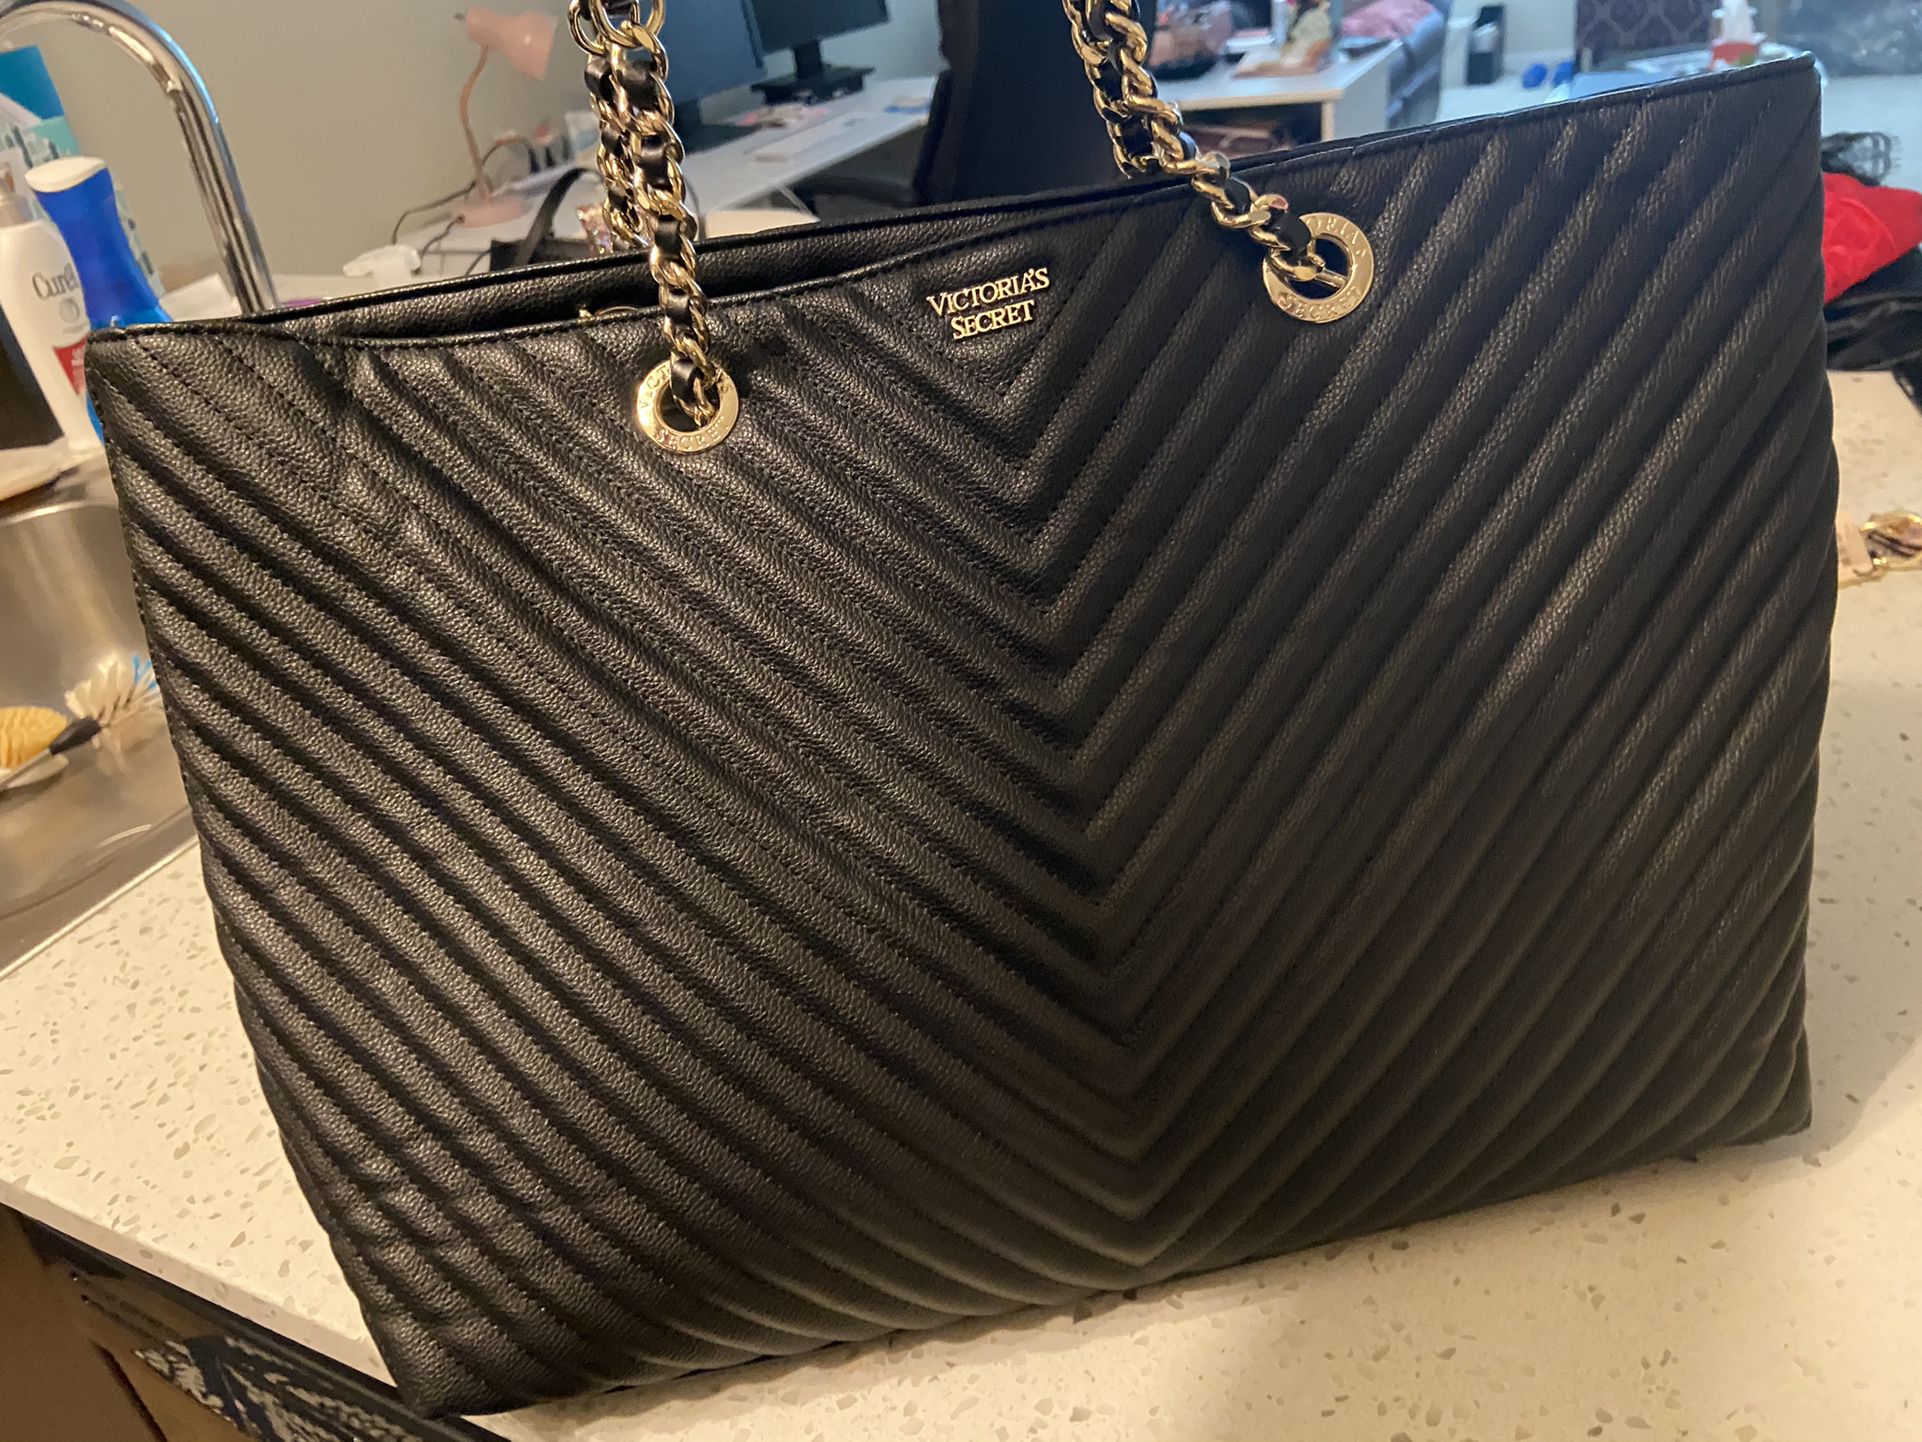 Victoria Secret Black Quilted large Tote Bag